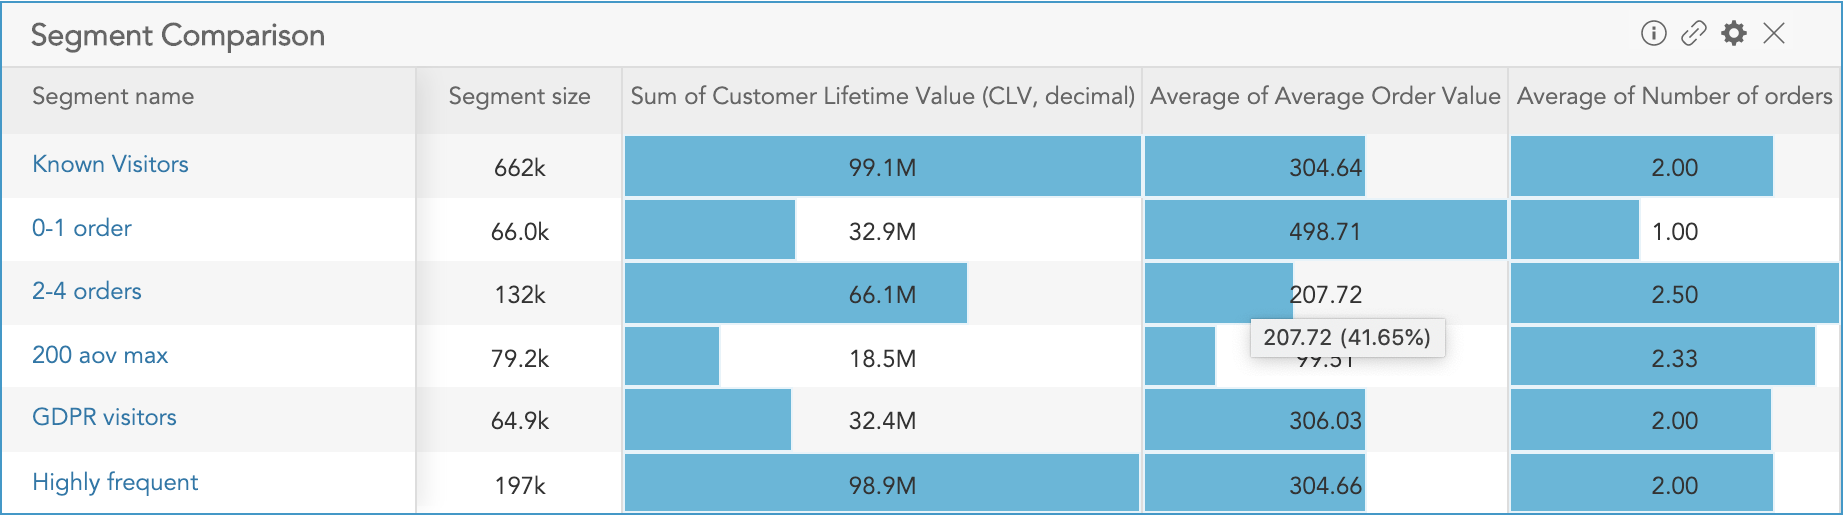 How to compare customer data in customer segments using the Segment Comparison Insight in BlueConic